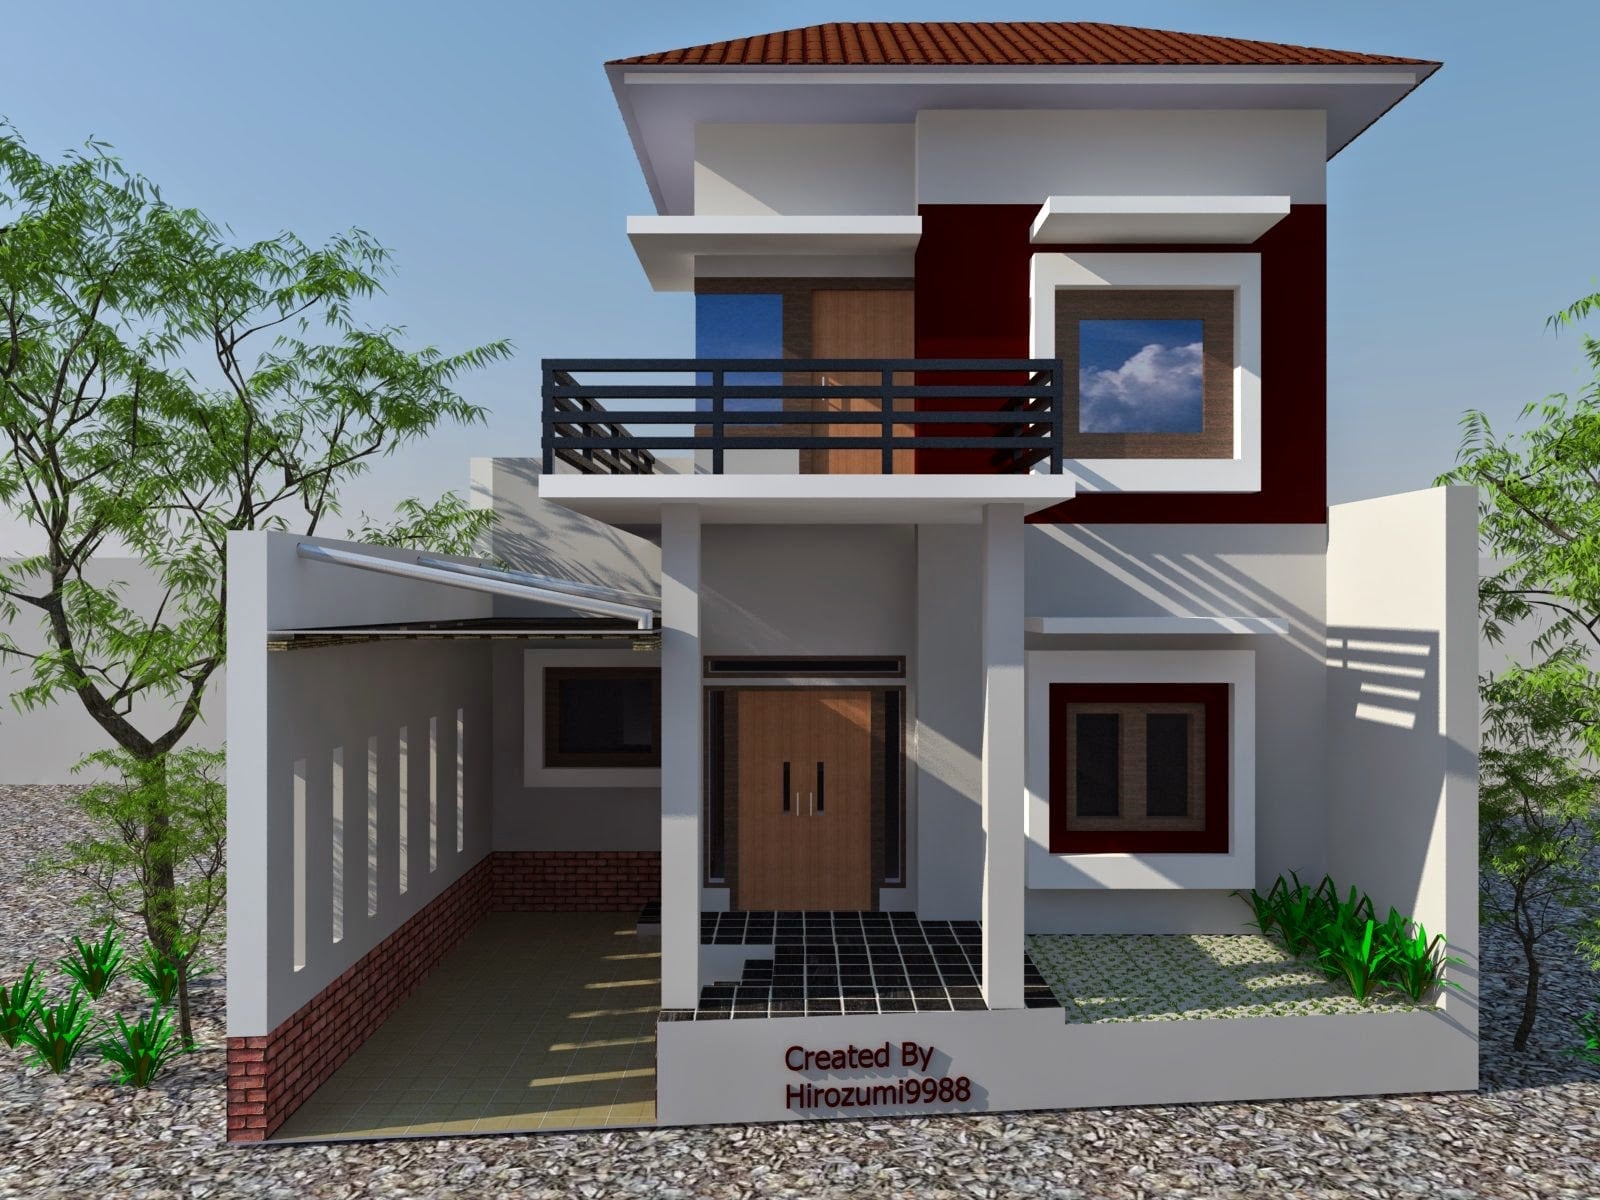 Hebat Desain Rumah Minimalis Lantai 2 Sederhana 68 Dengan Tambahan Dekorasi Rumah Untuk Gaya Desain Interior dengan Desain Rumah Minimalis Lantai 2 Sederhana